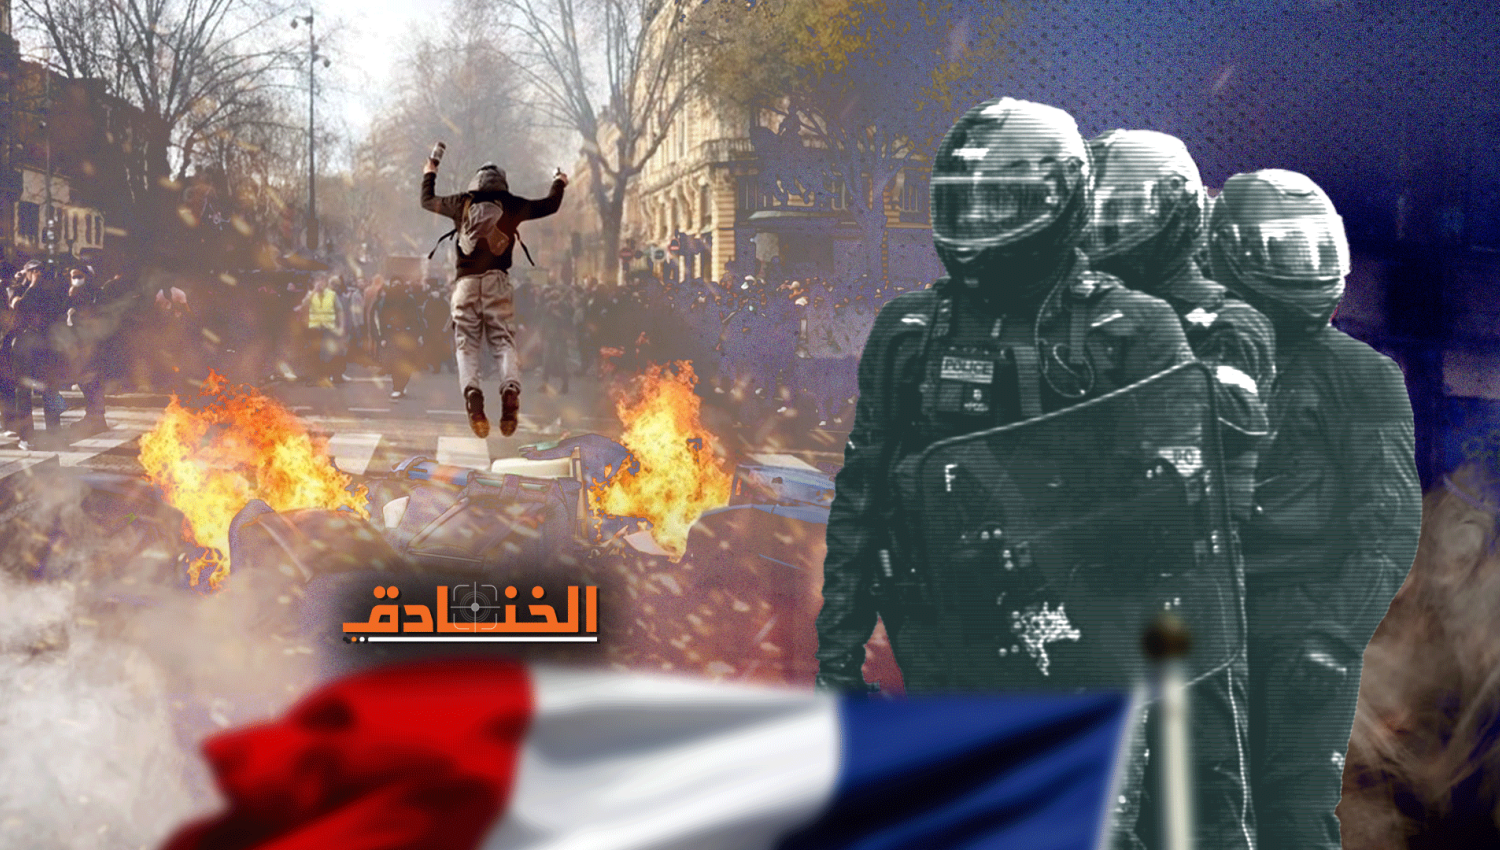 مقطع صوتي يفضح قمع وعنف الشرطة الفرنسية